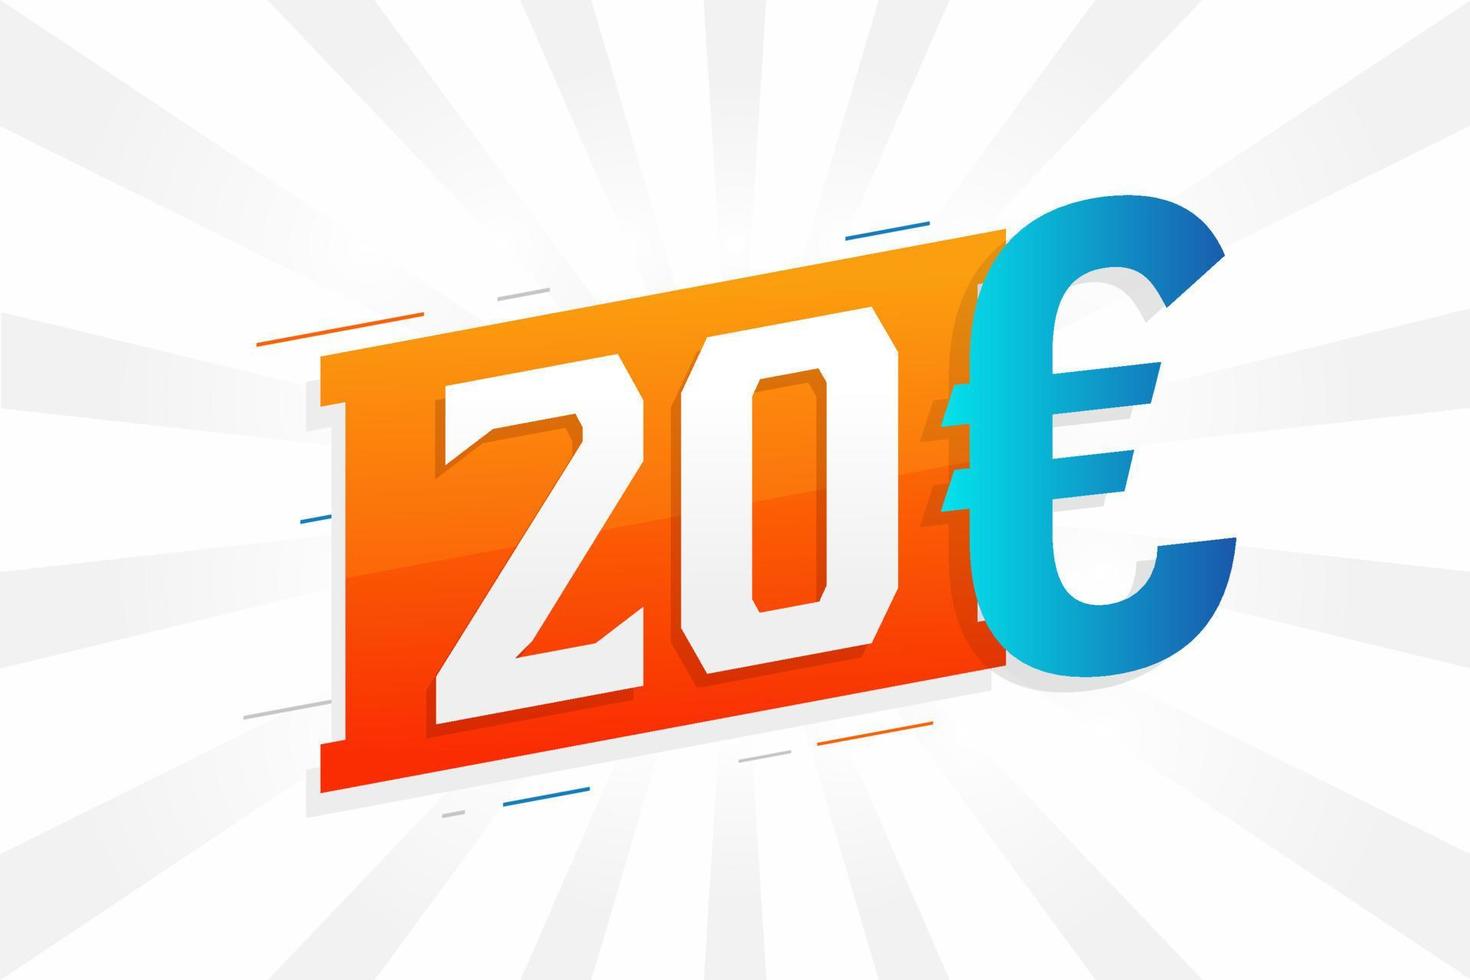 20 Euro Currency vector text symbol. 20 Euro European Union Money stock vector